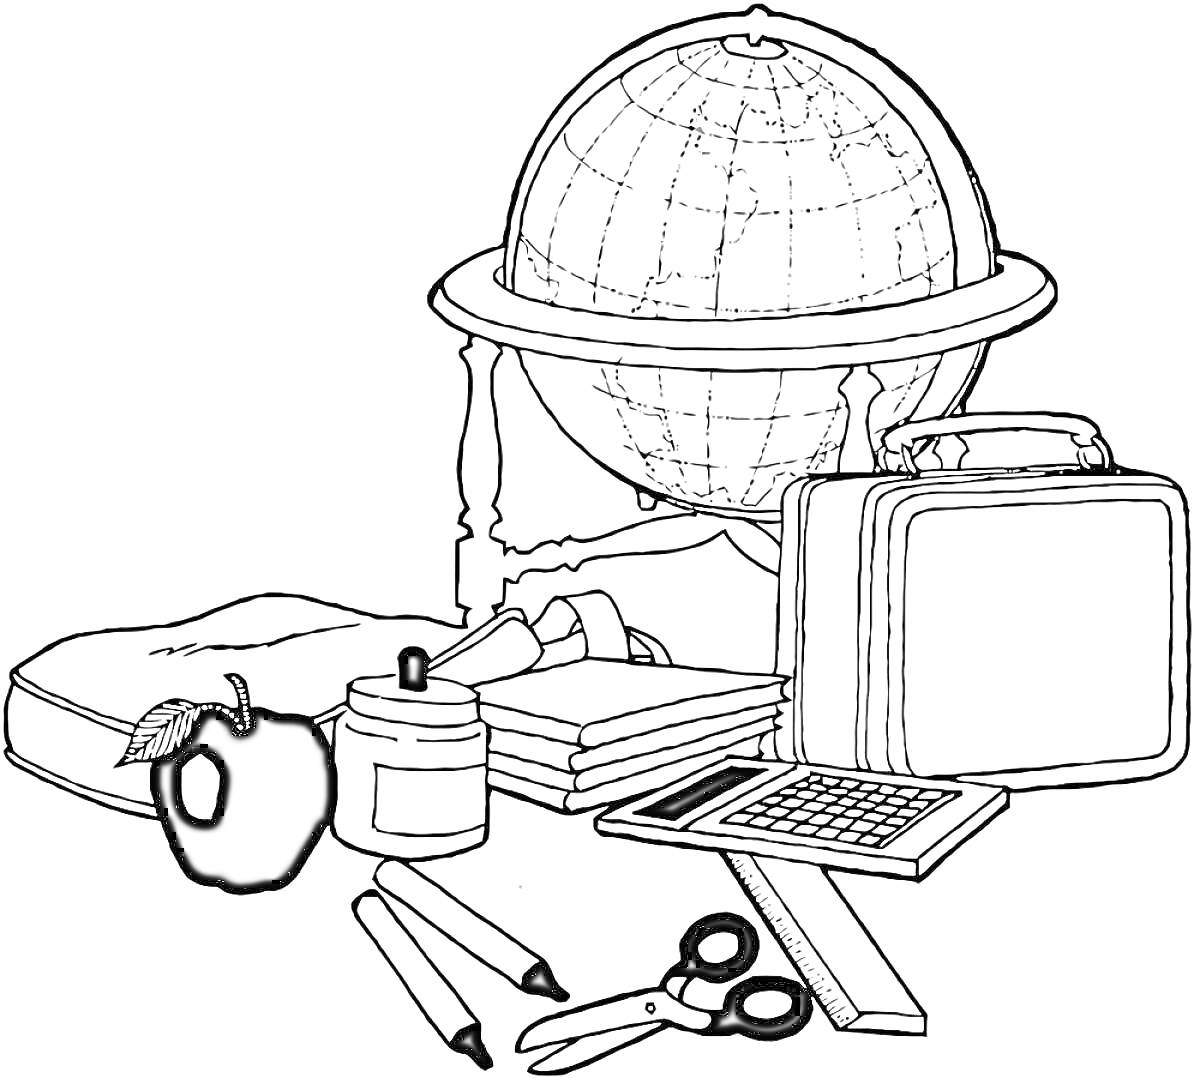 Раскраска Глобус с учебными принадлежностями: школьная сумка, яблоко, банка с красками, три книги, свёрнутый свиток, школьный ланчбокс, калькулятор, ножницы, два карандаша